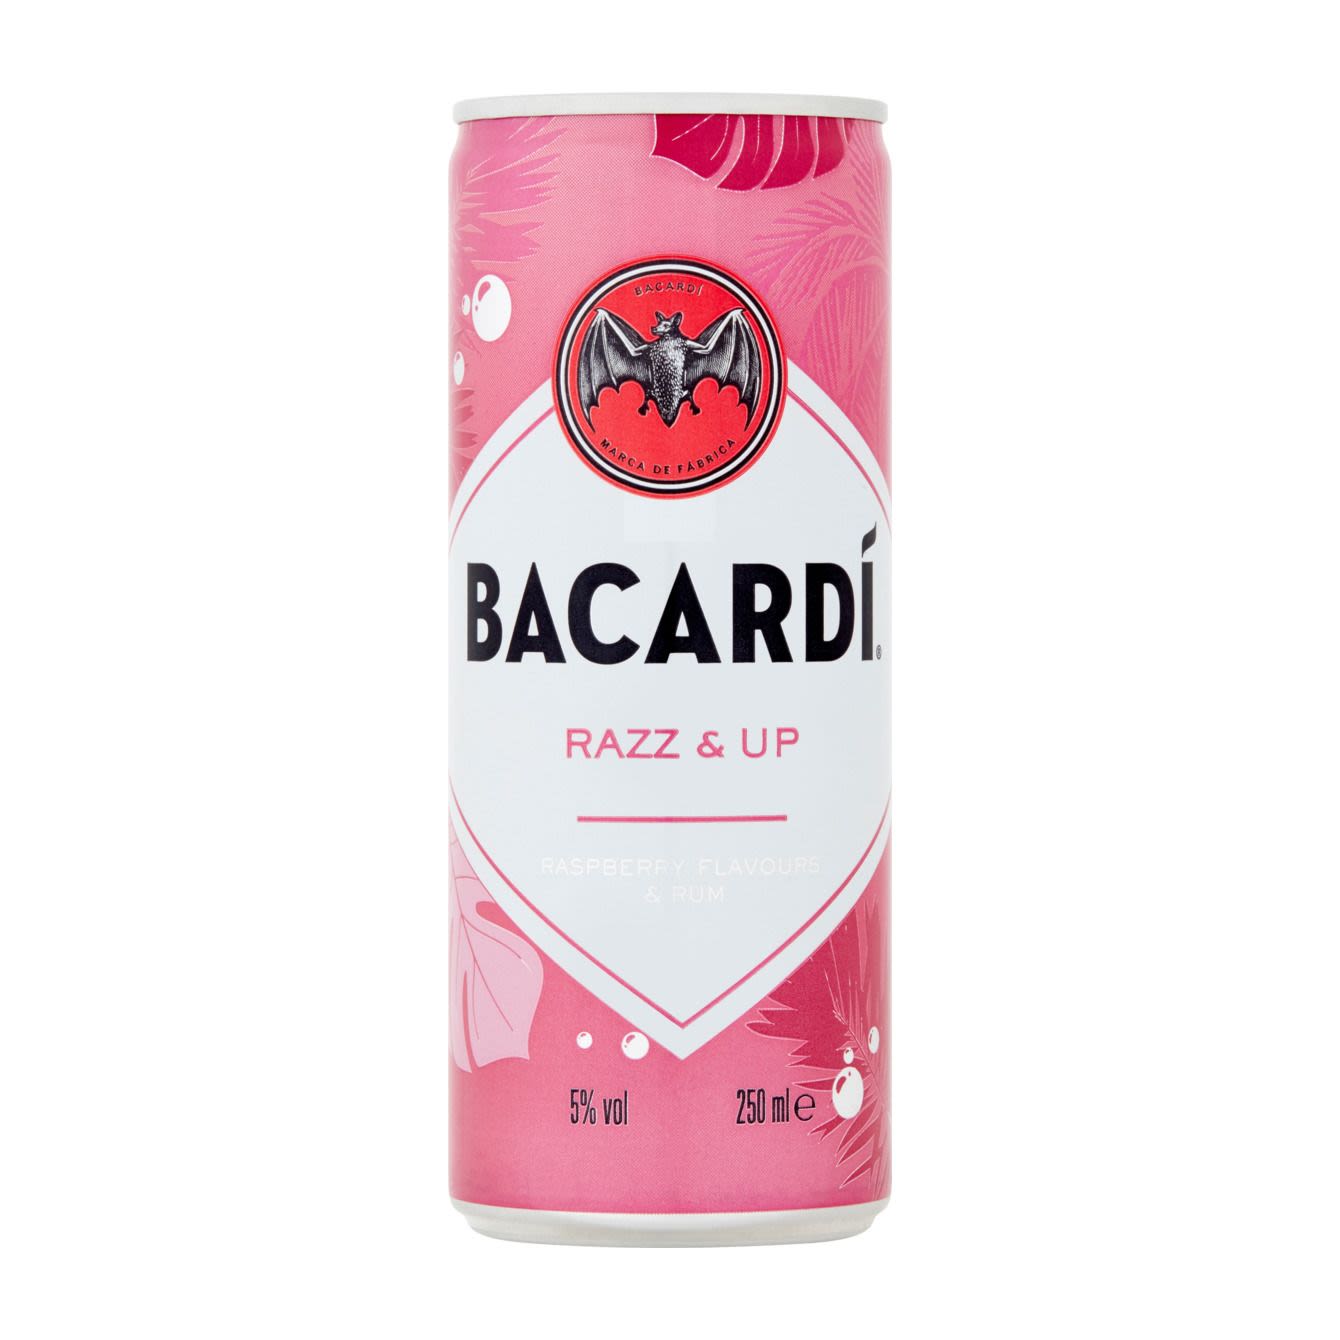 Bacardi Razz &amp; up blik online bestellen? | Coop.nl